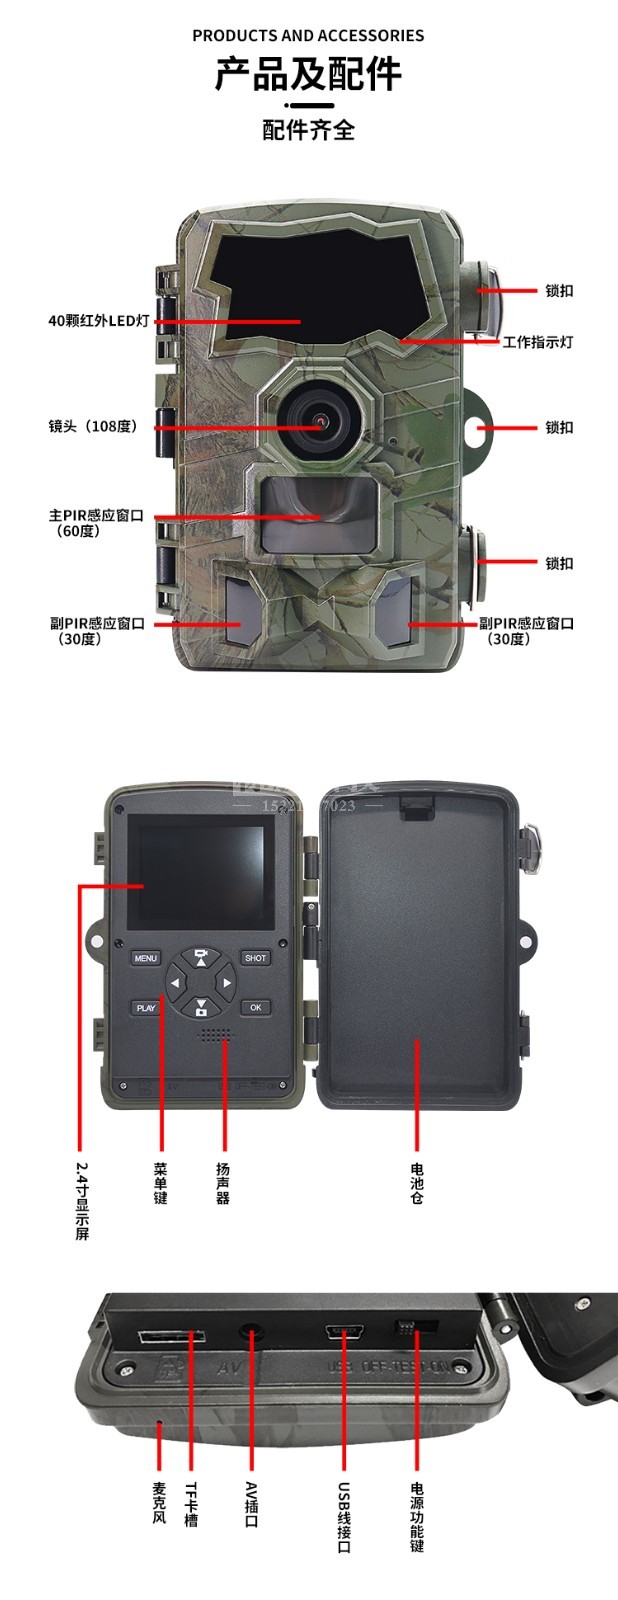 高迪H888红外相机 产品及配件.jpg